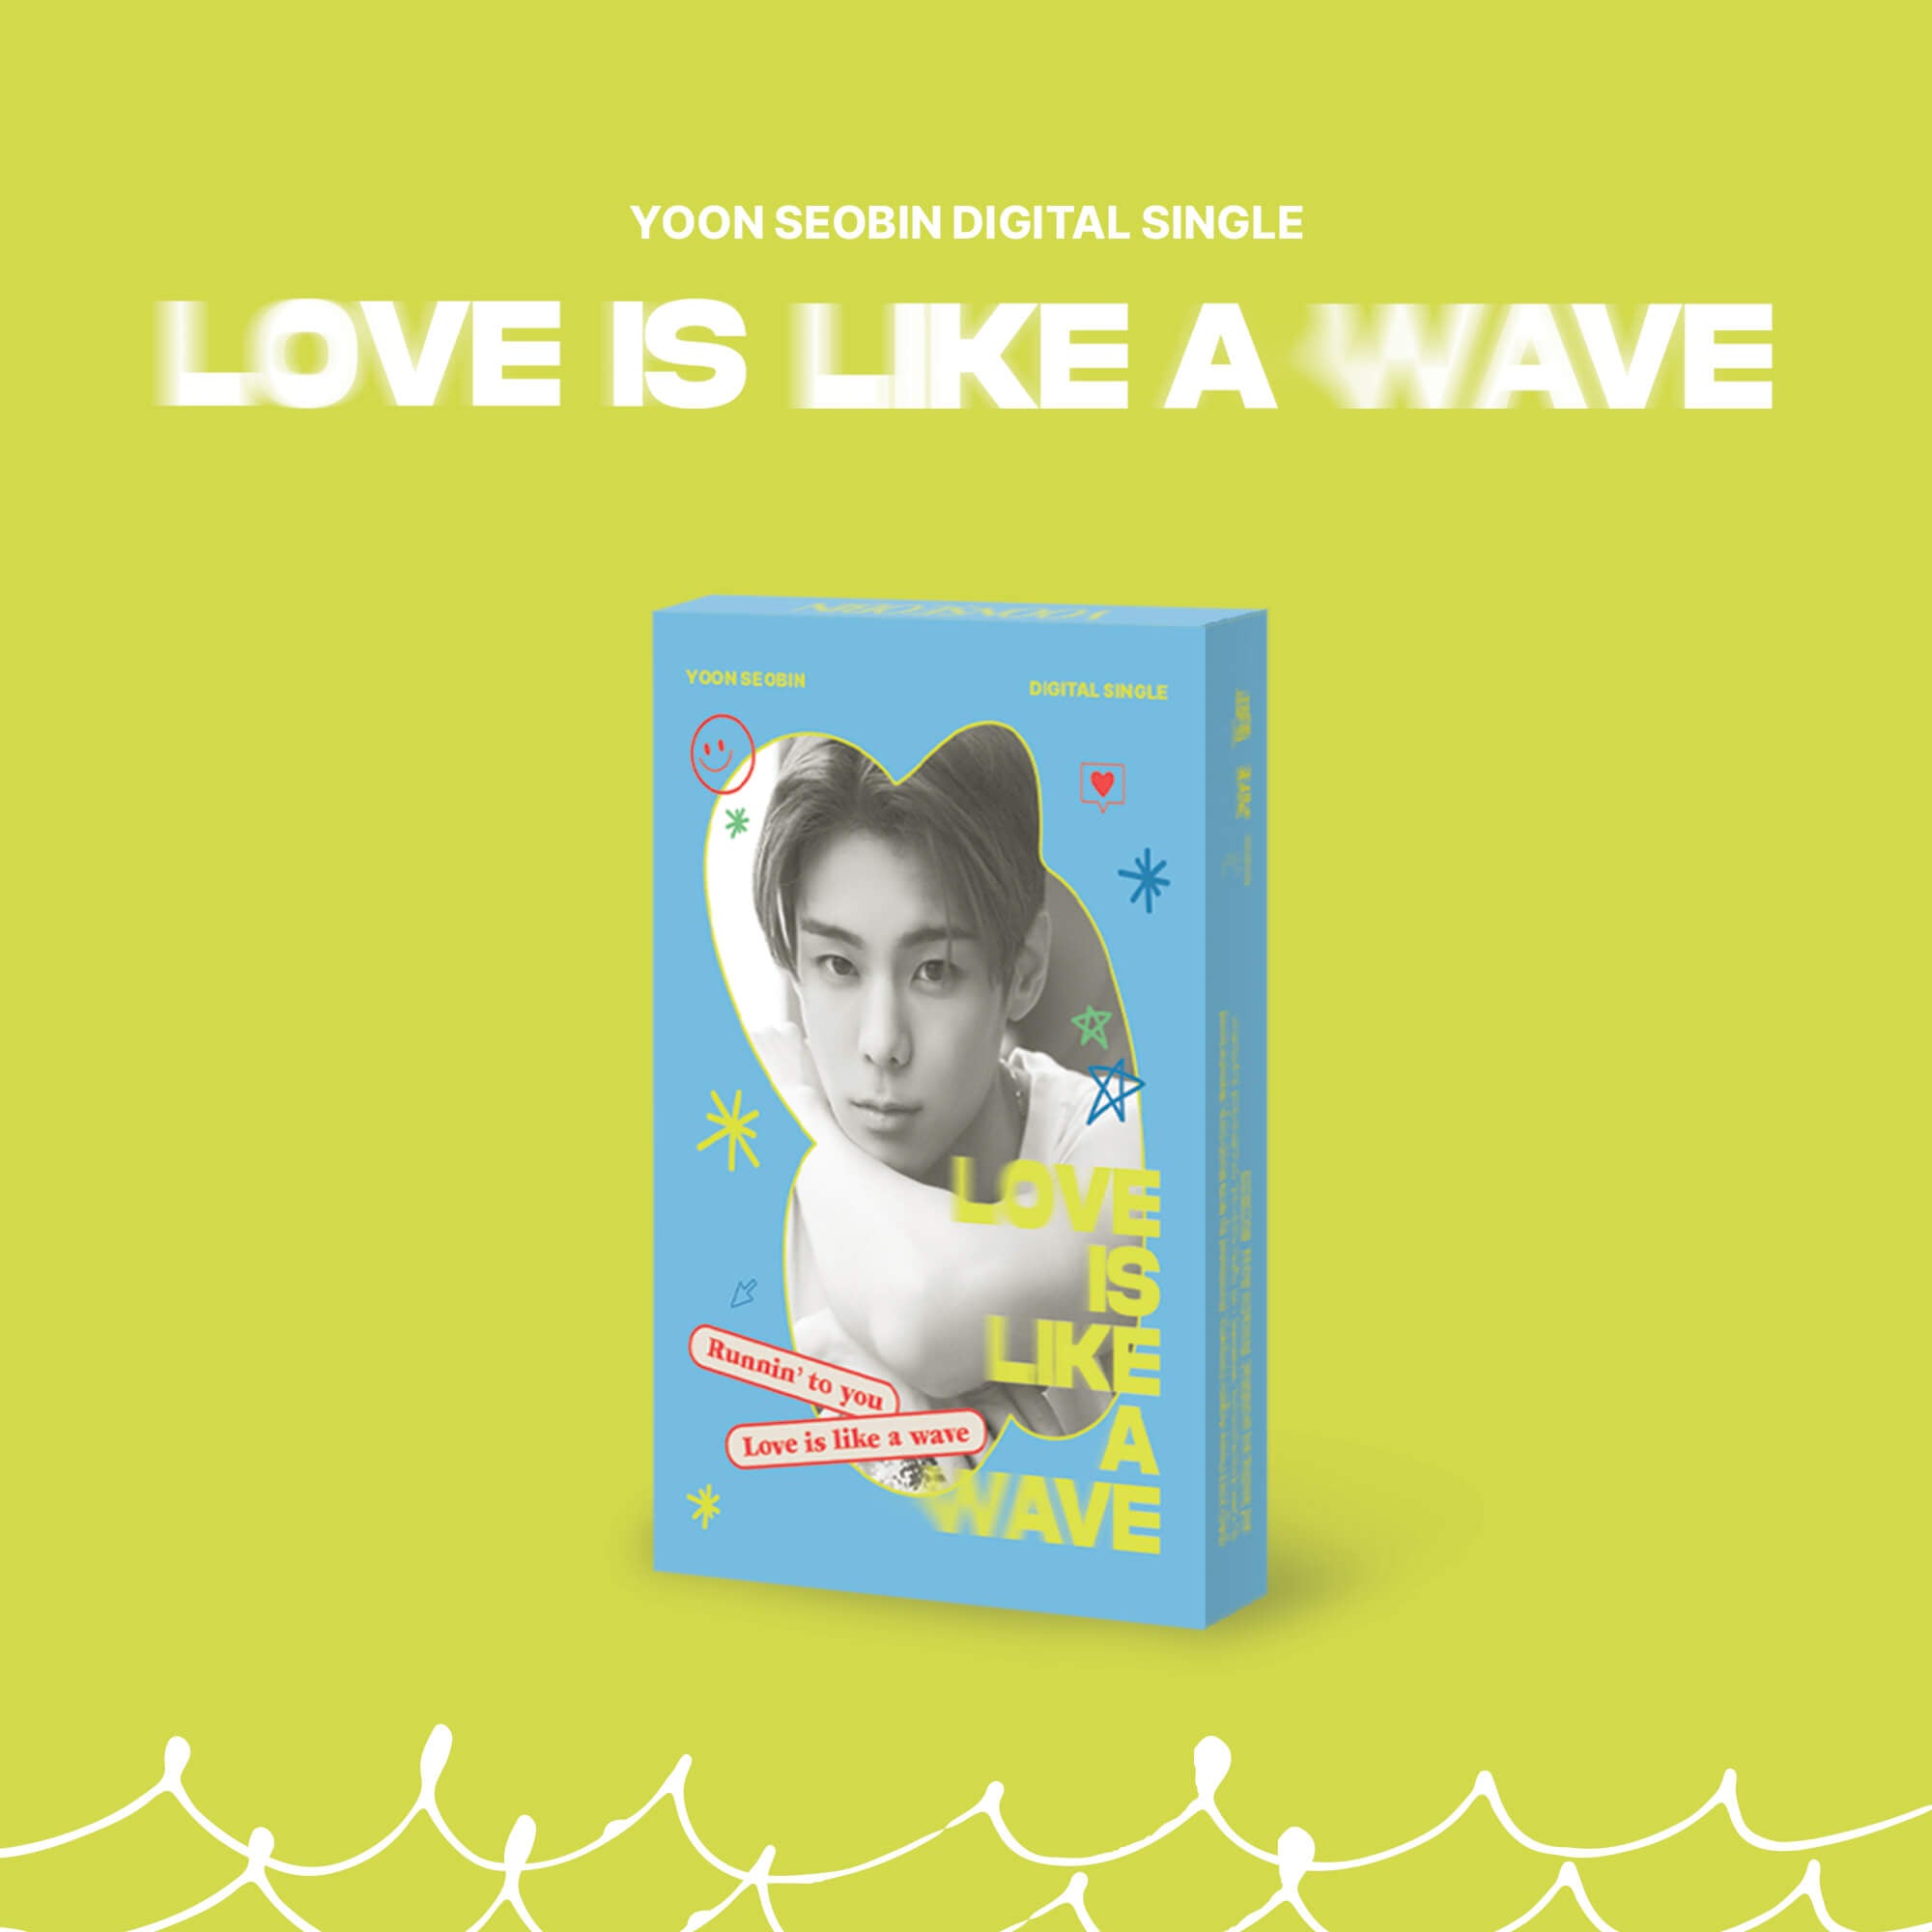 Yoon Seobin Digital Single Album Love is like a wave - PLVE Version